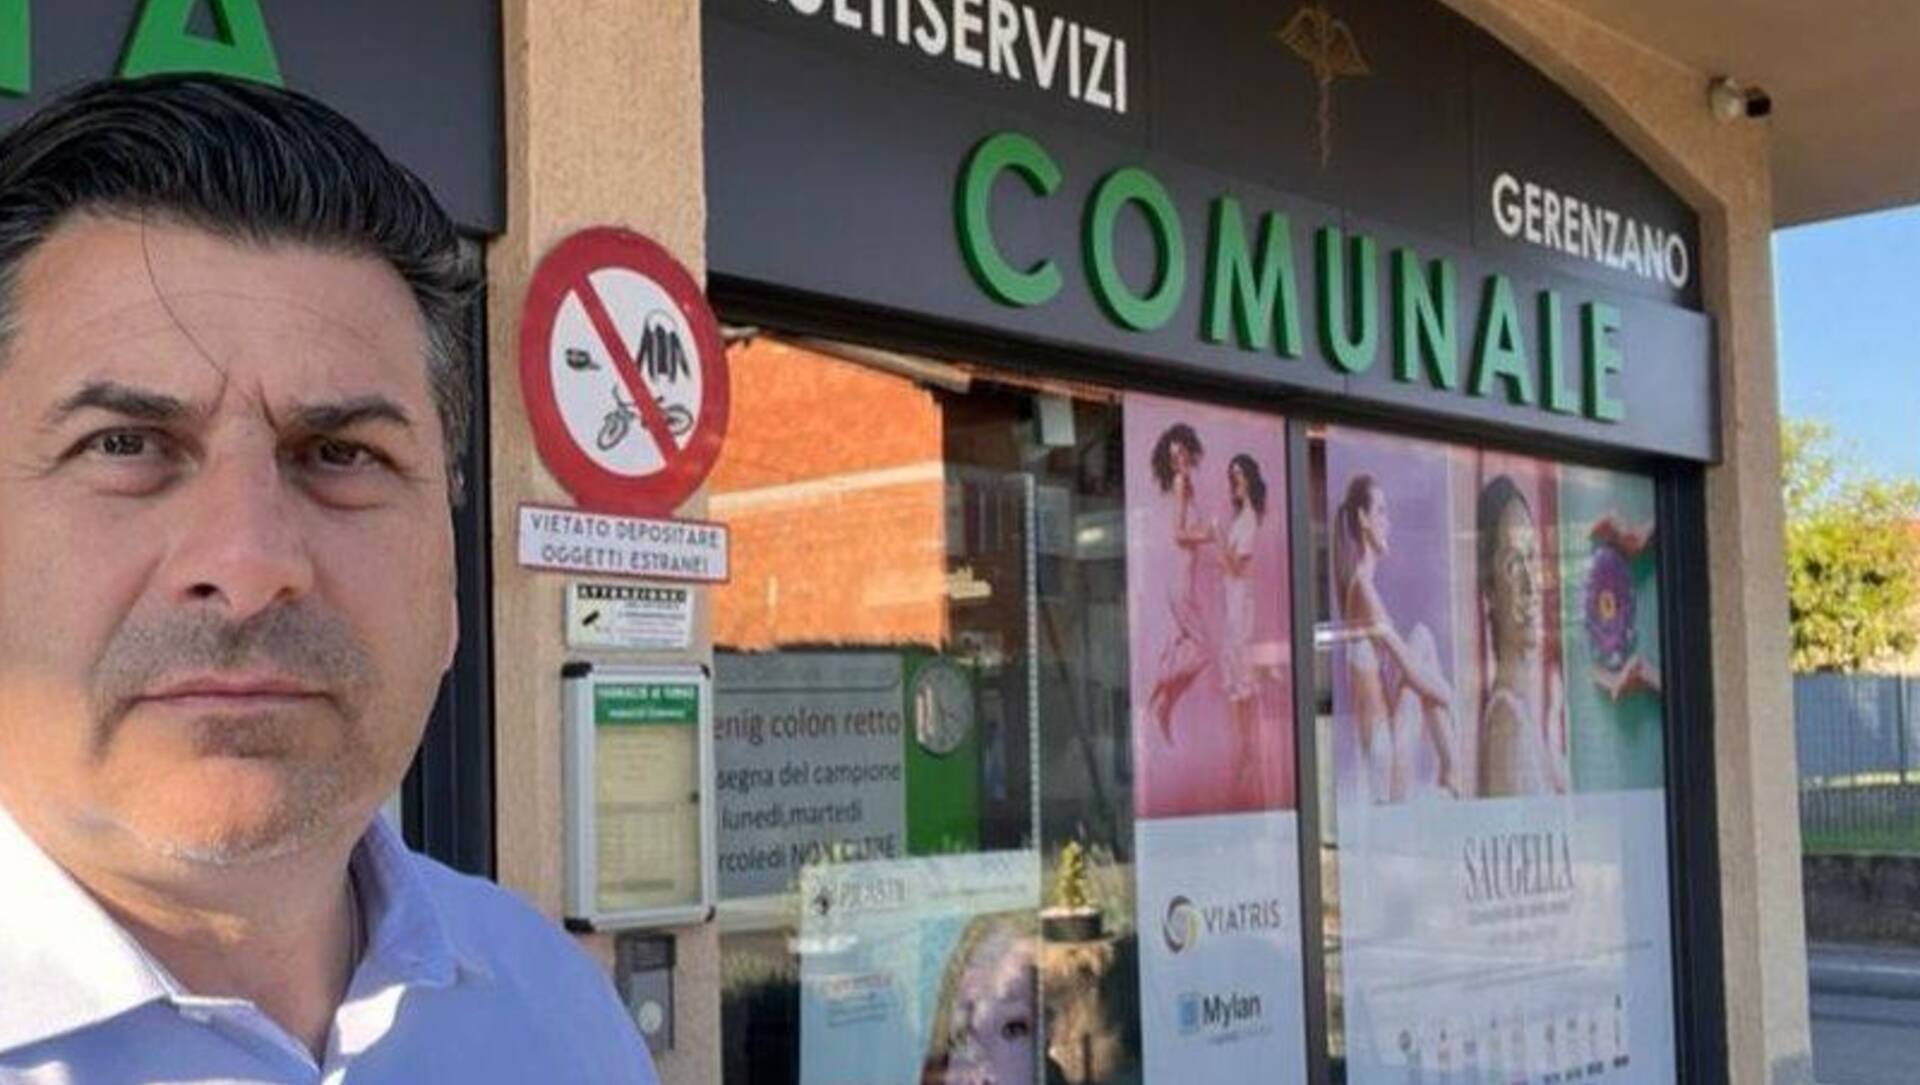 Andrea Fermata: “La farmacia comunale di Gerenzano: un passo importante verso un futuro solidale”